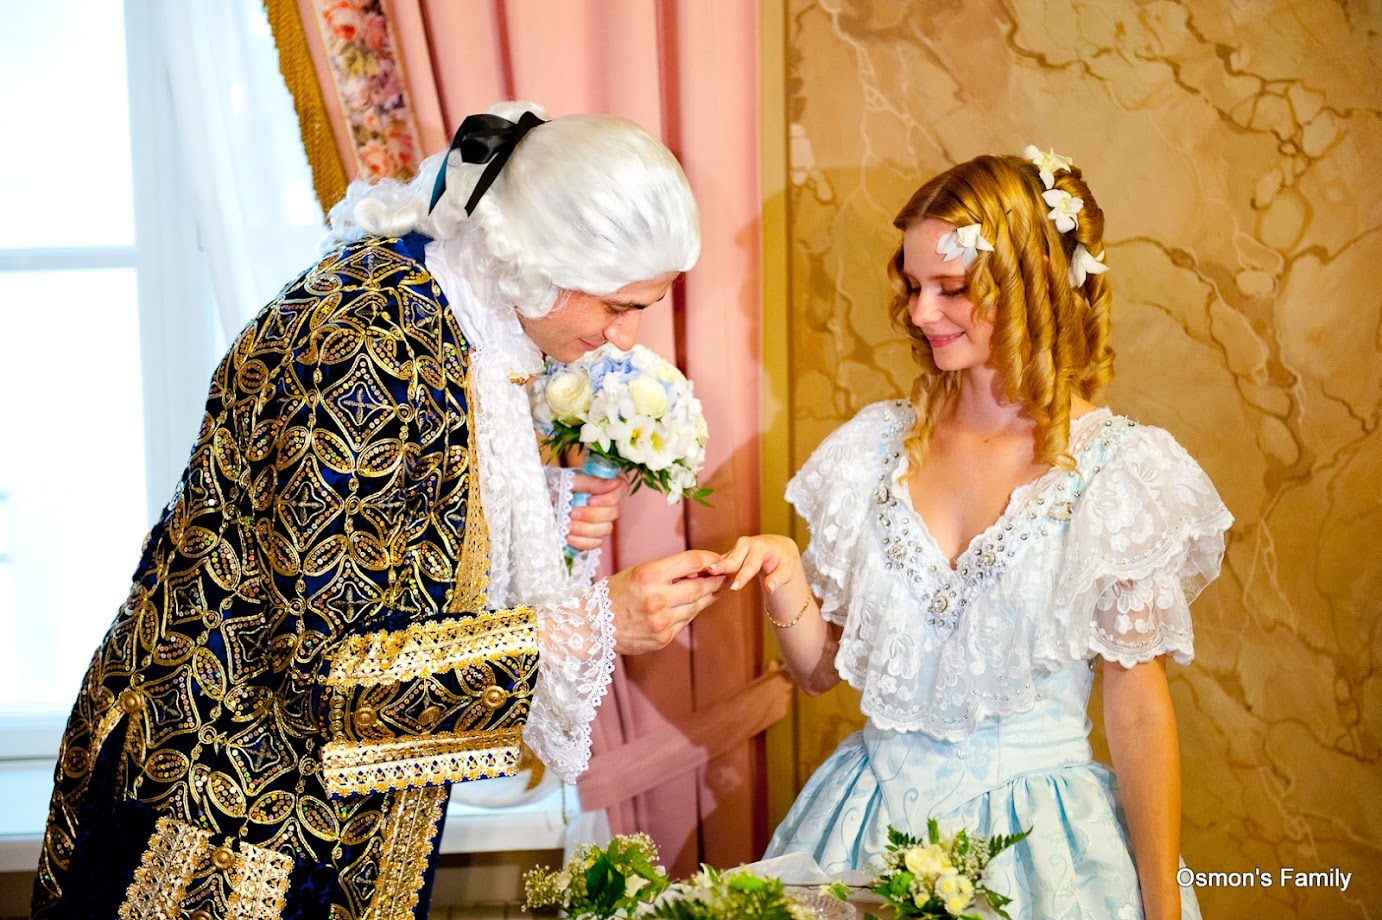 Princess Anna Osmon accepts Prince Kai Osmon proposal